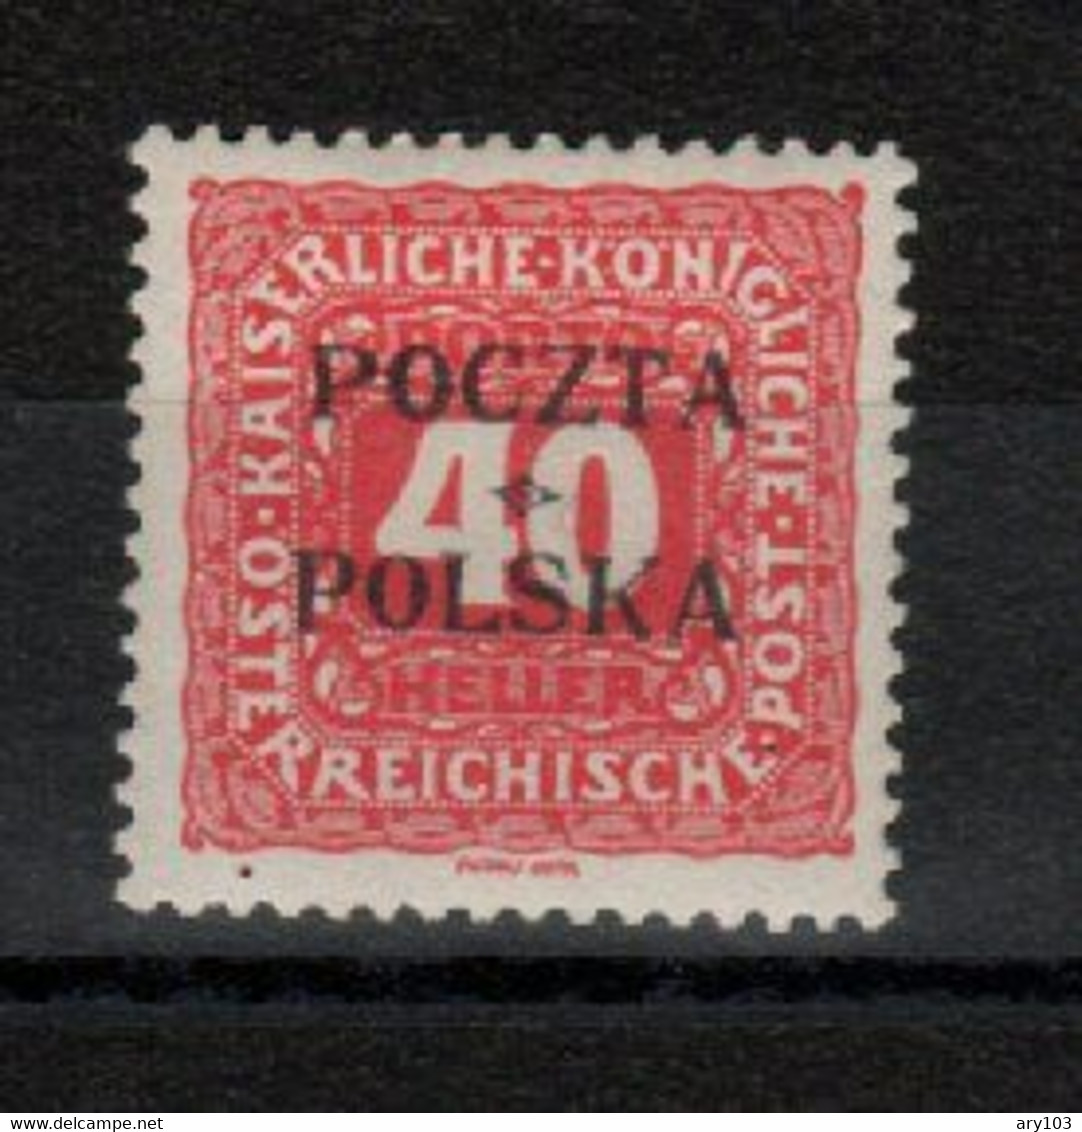 Pologne - Taxe  N°4 (1919 ) - Strafport